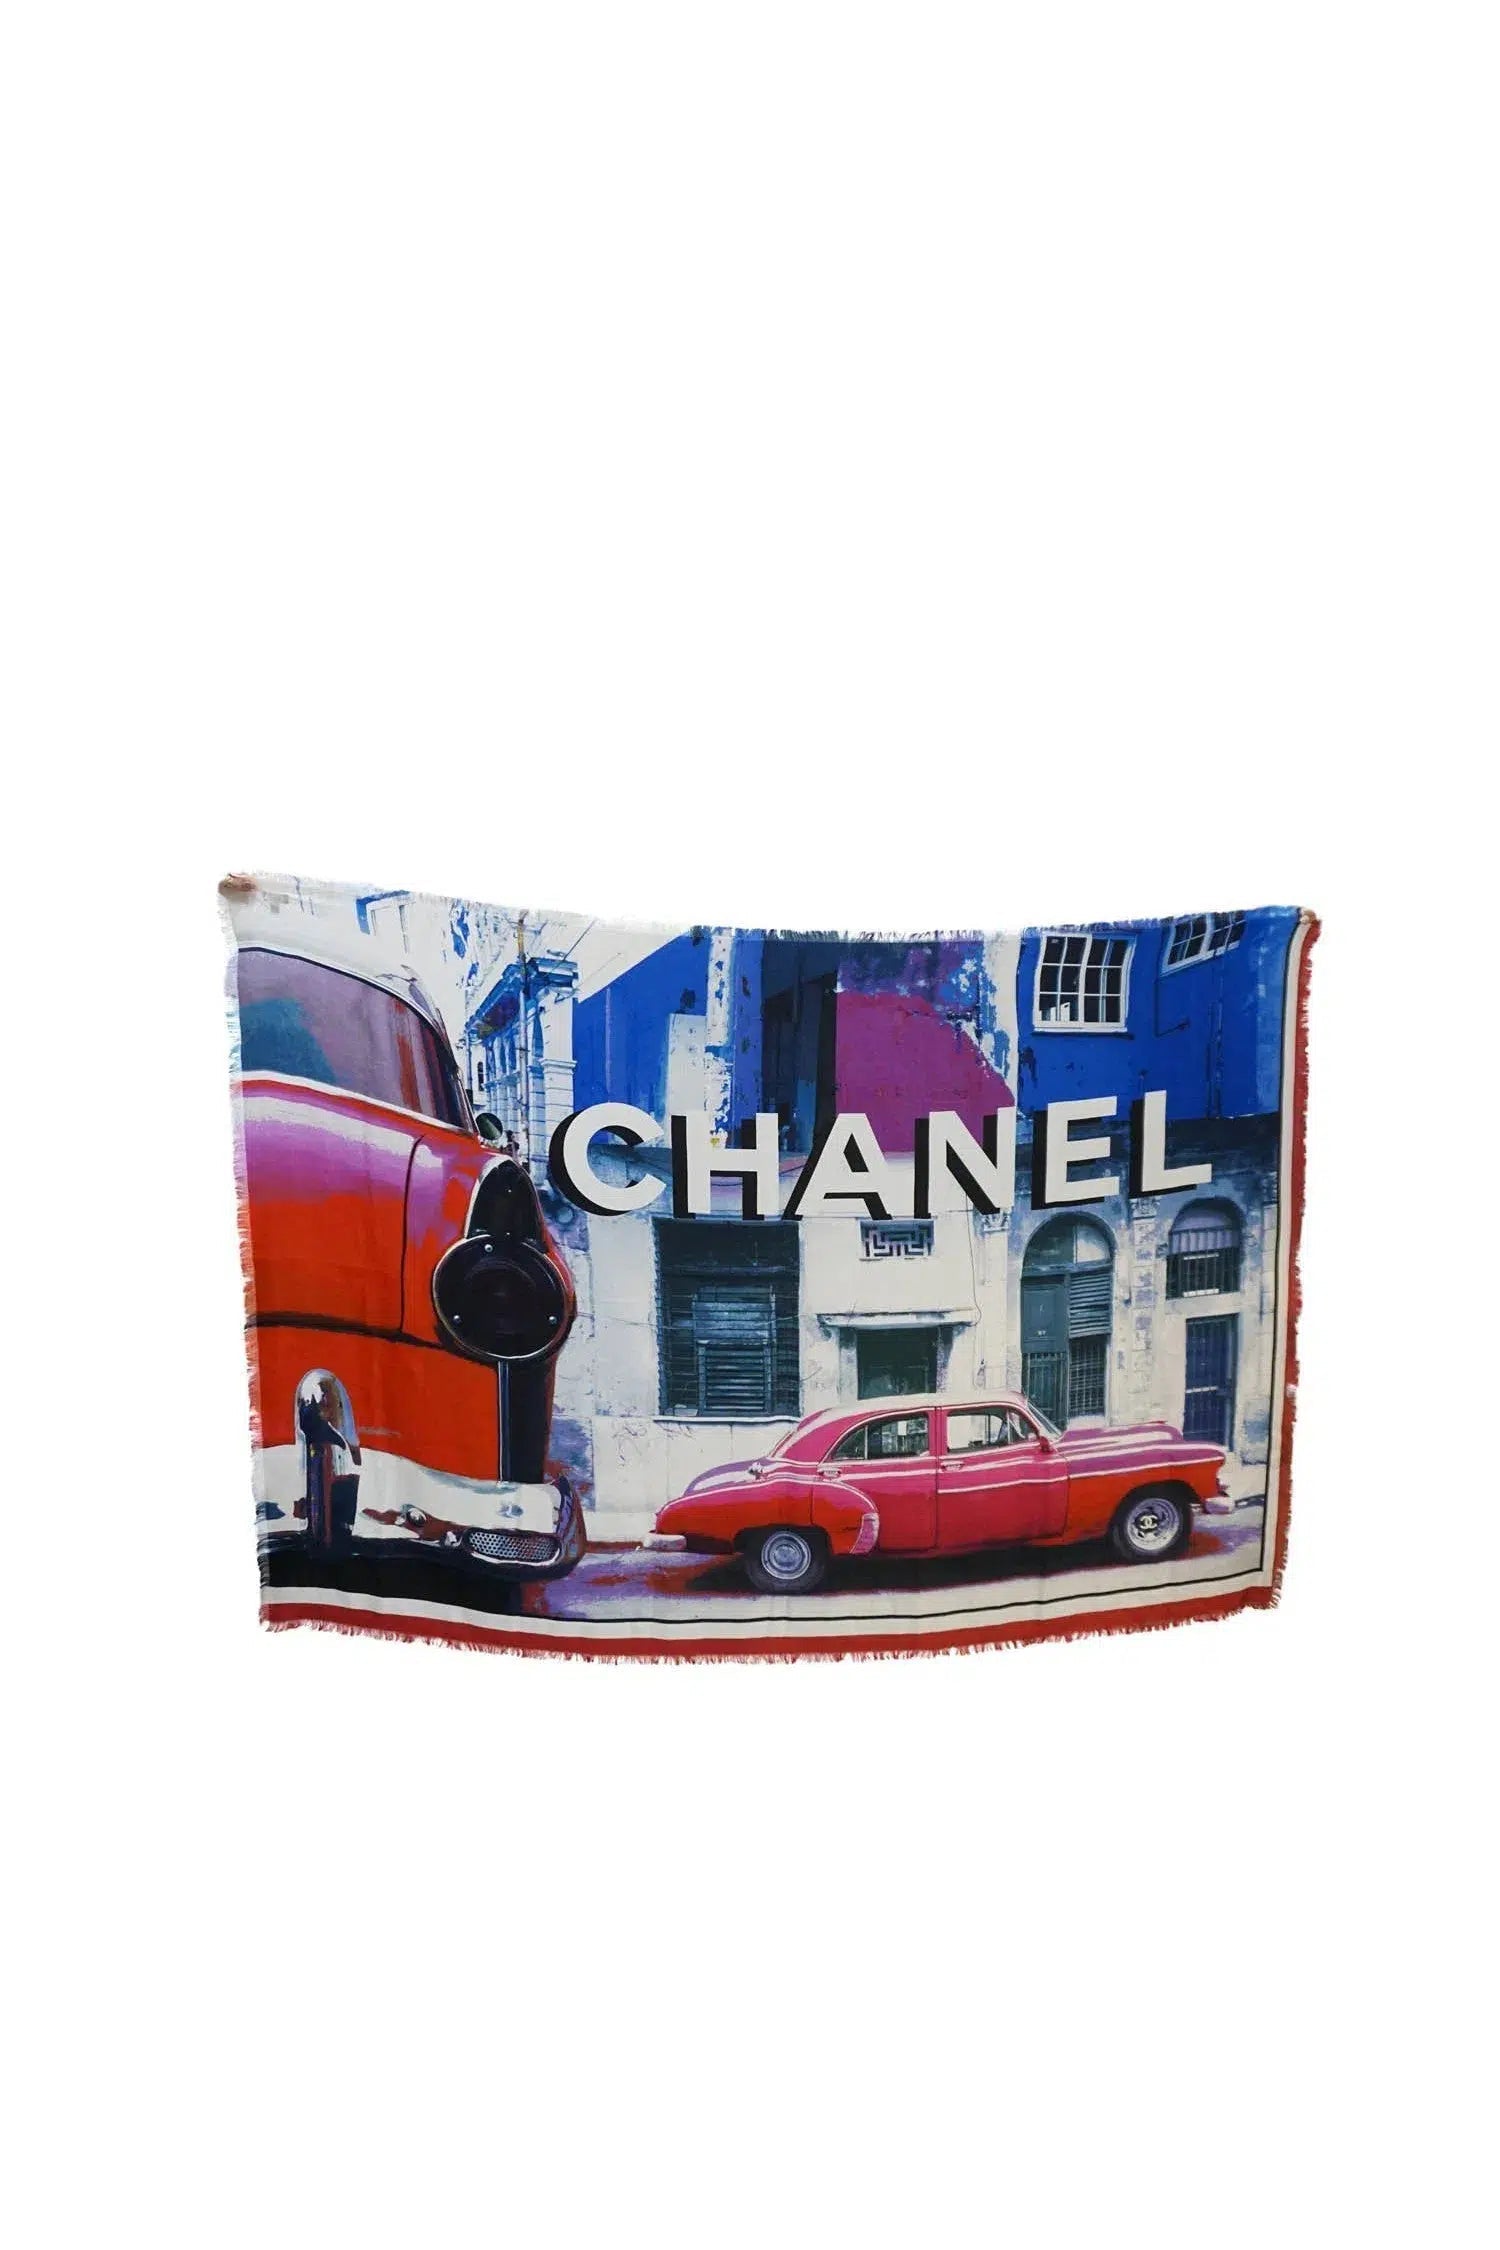 Chanel Cuba Car Print Silk Scarf NIB 2018C - Foxy Couture Carmel